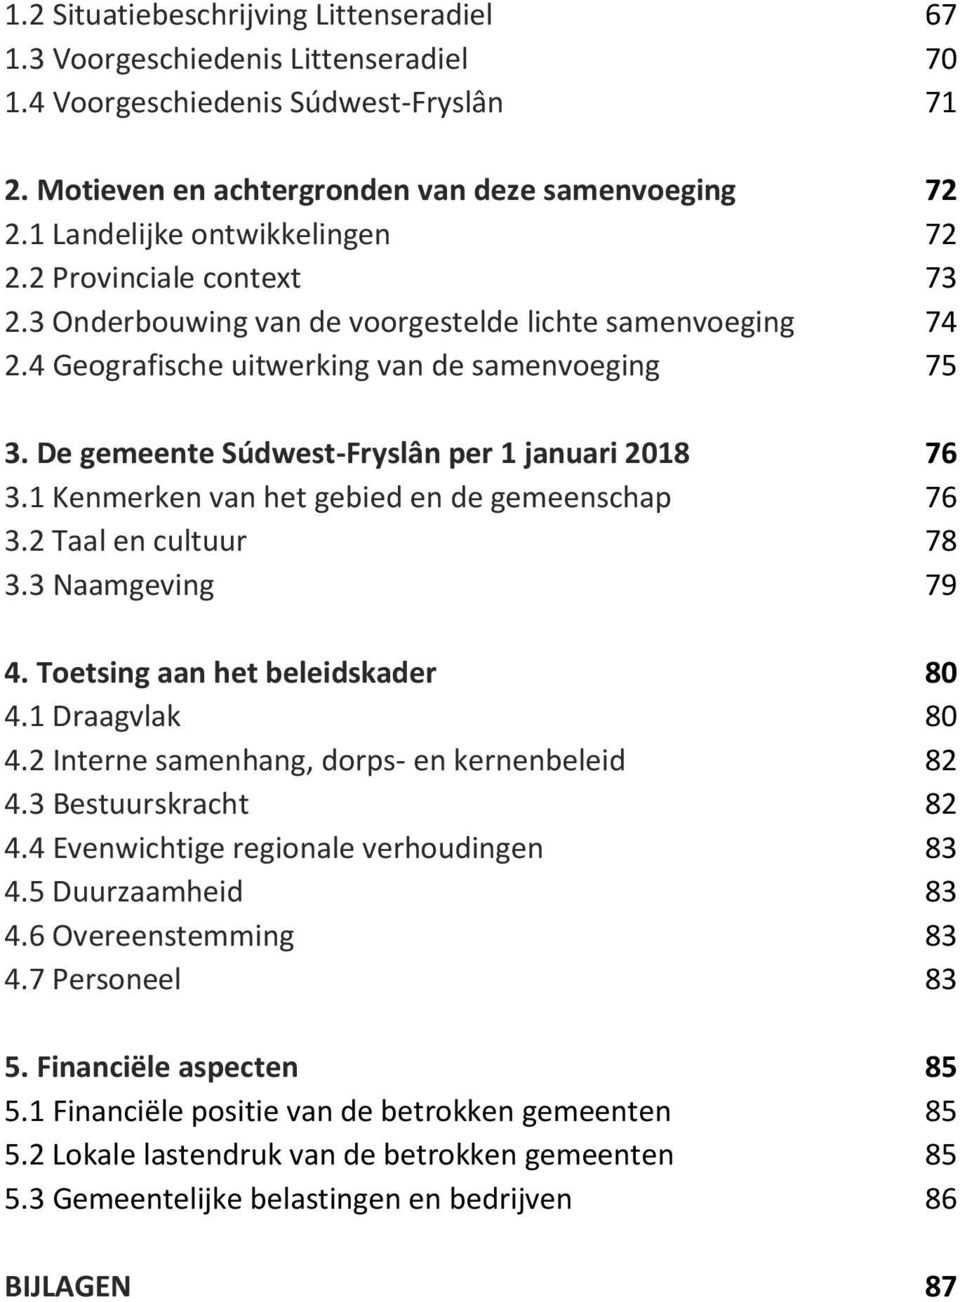 De gemeente Súdwest-Fryslân per 1 januari 2018 76 3.1 Kenmerken van het gebied en de gemeenschap 76 3.2 Taal en cultuur 78 3.3 Naamgeving 79 4. Toetsing aan het beleidskader 80 4.1 Draagvlak 80 4.